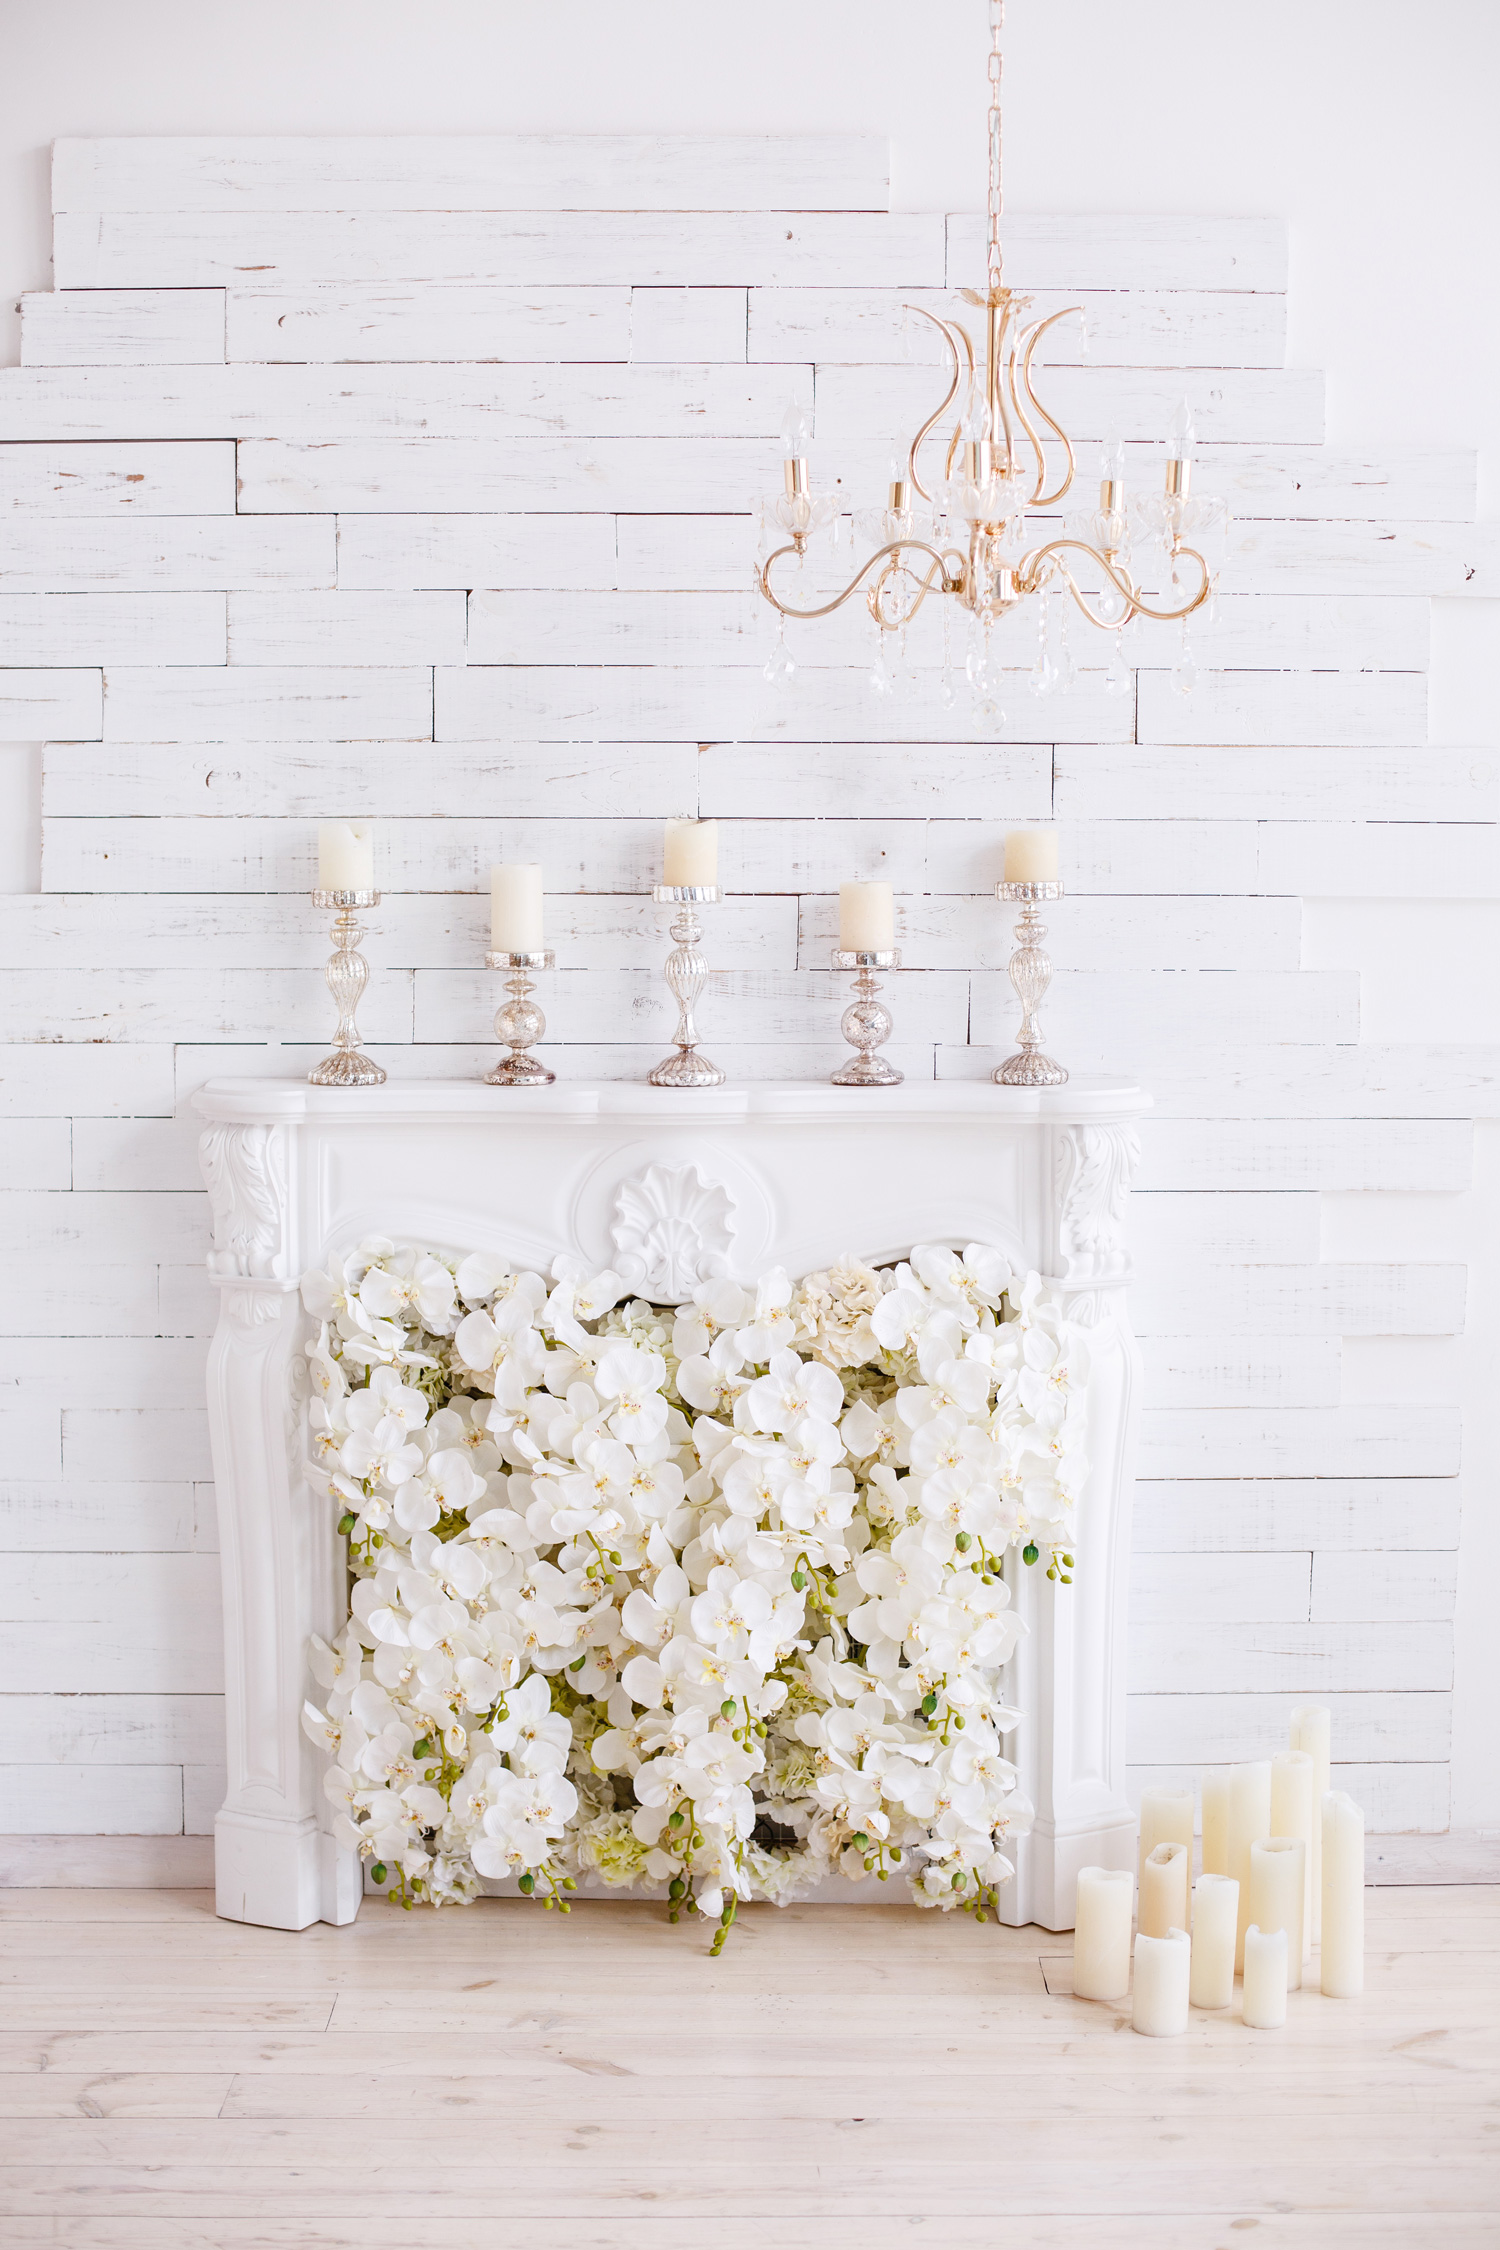 Elegant white fireplace full of flowers instead of fire. Elegant room